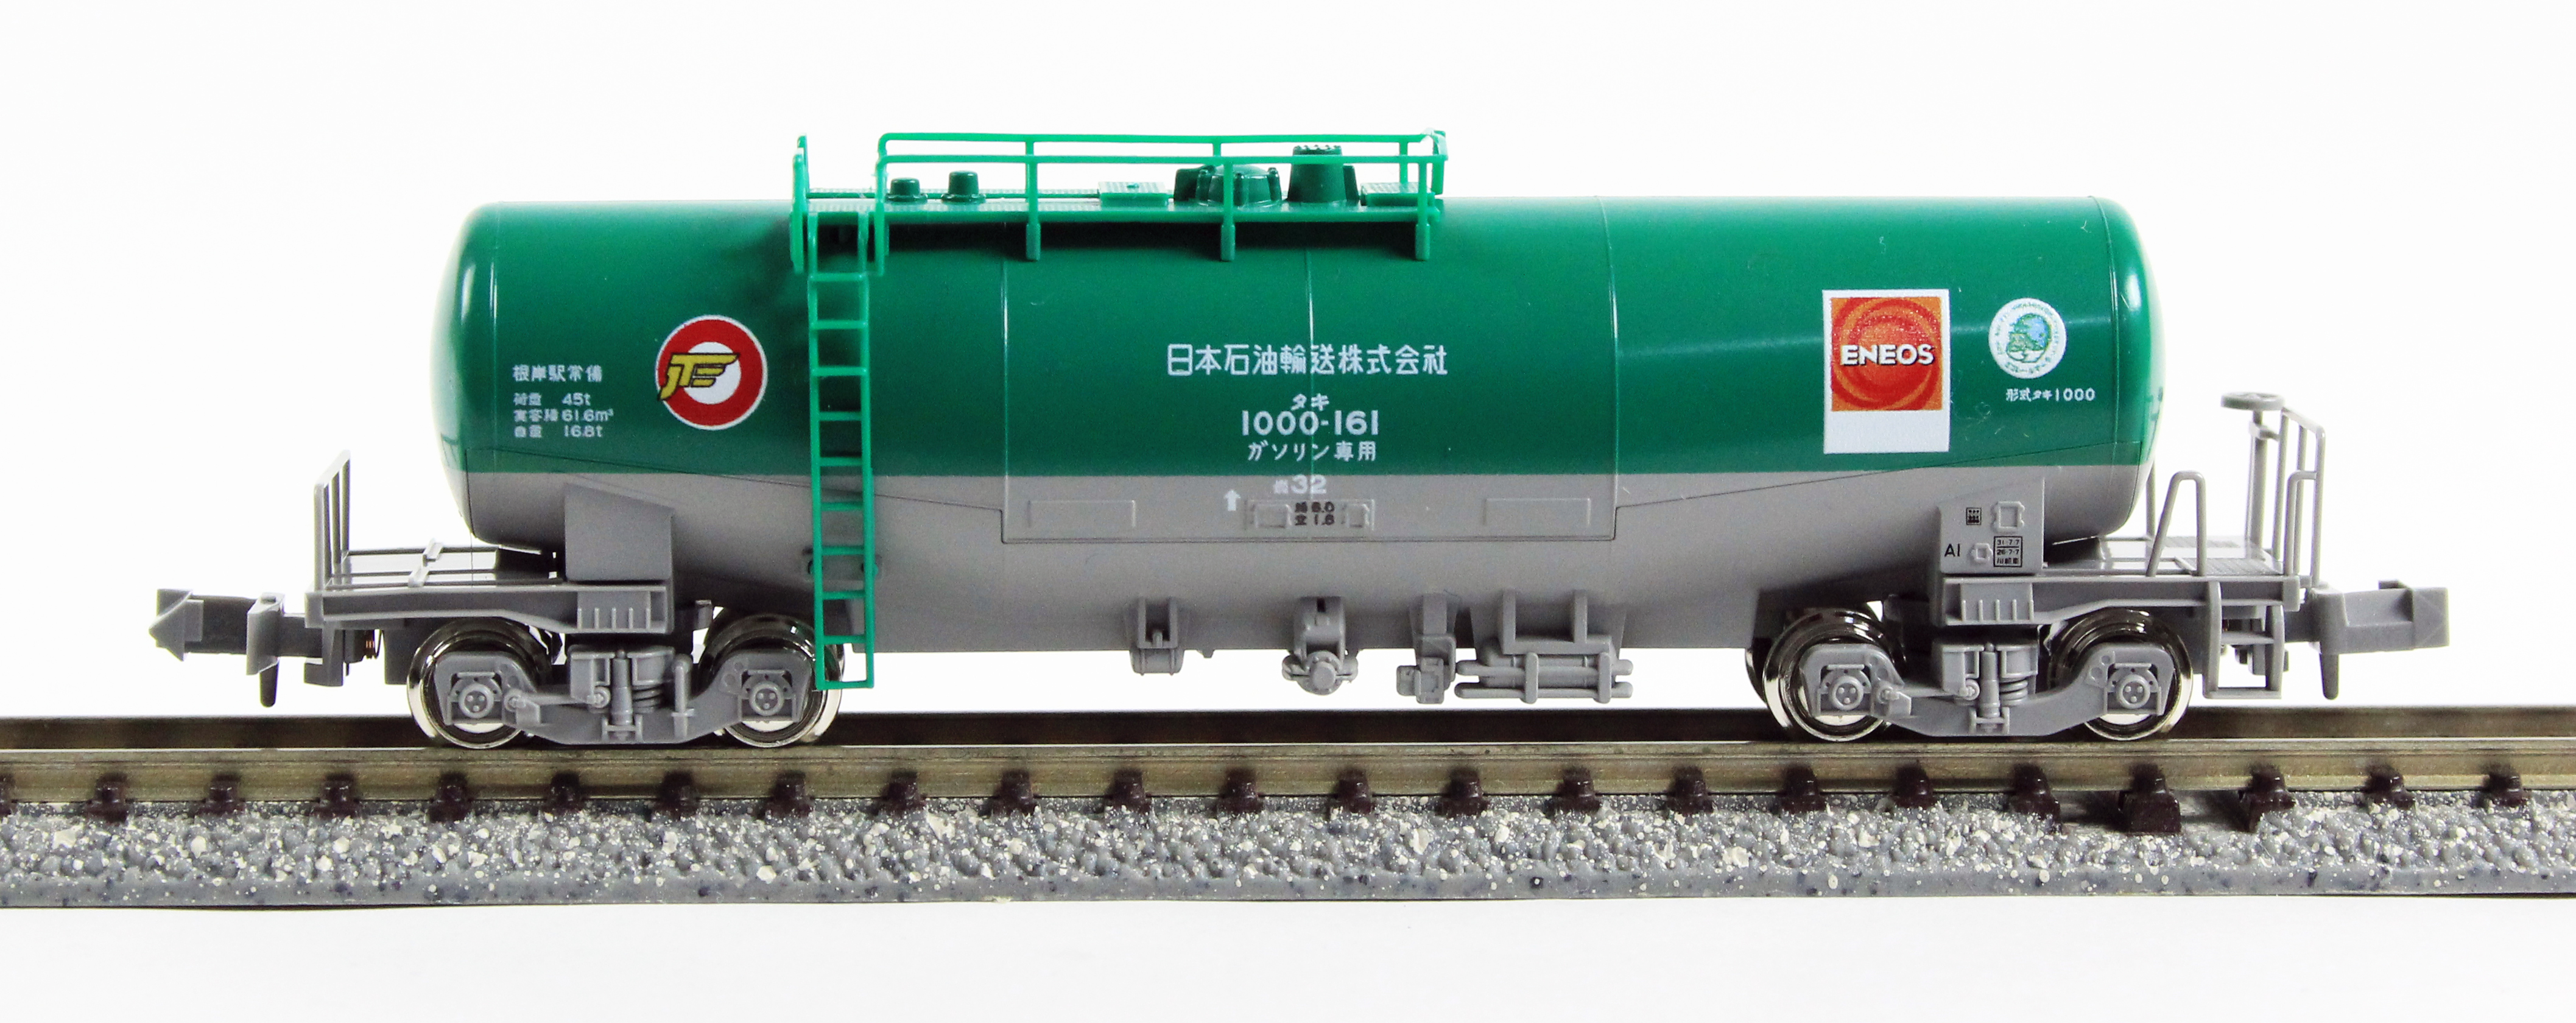 KATO 8037-6 タキ1000日本石油輸送色 ENEOS エコレールマーク付 鉄道 